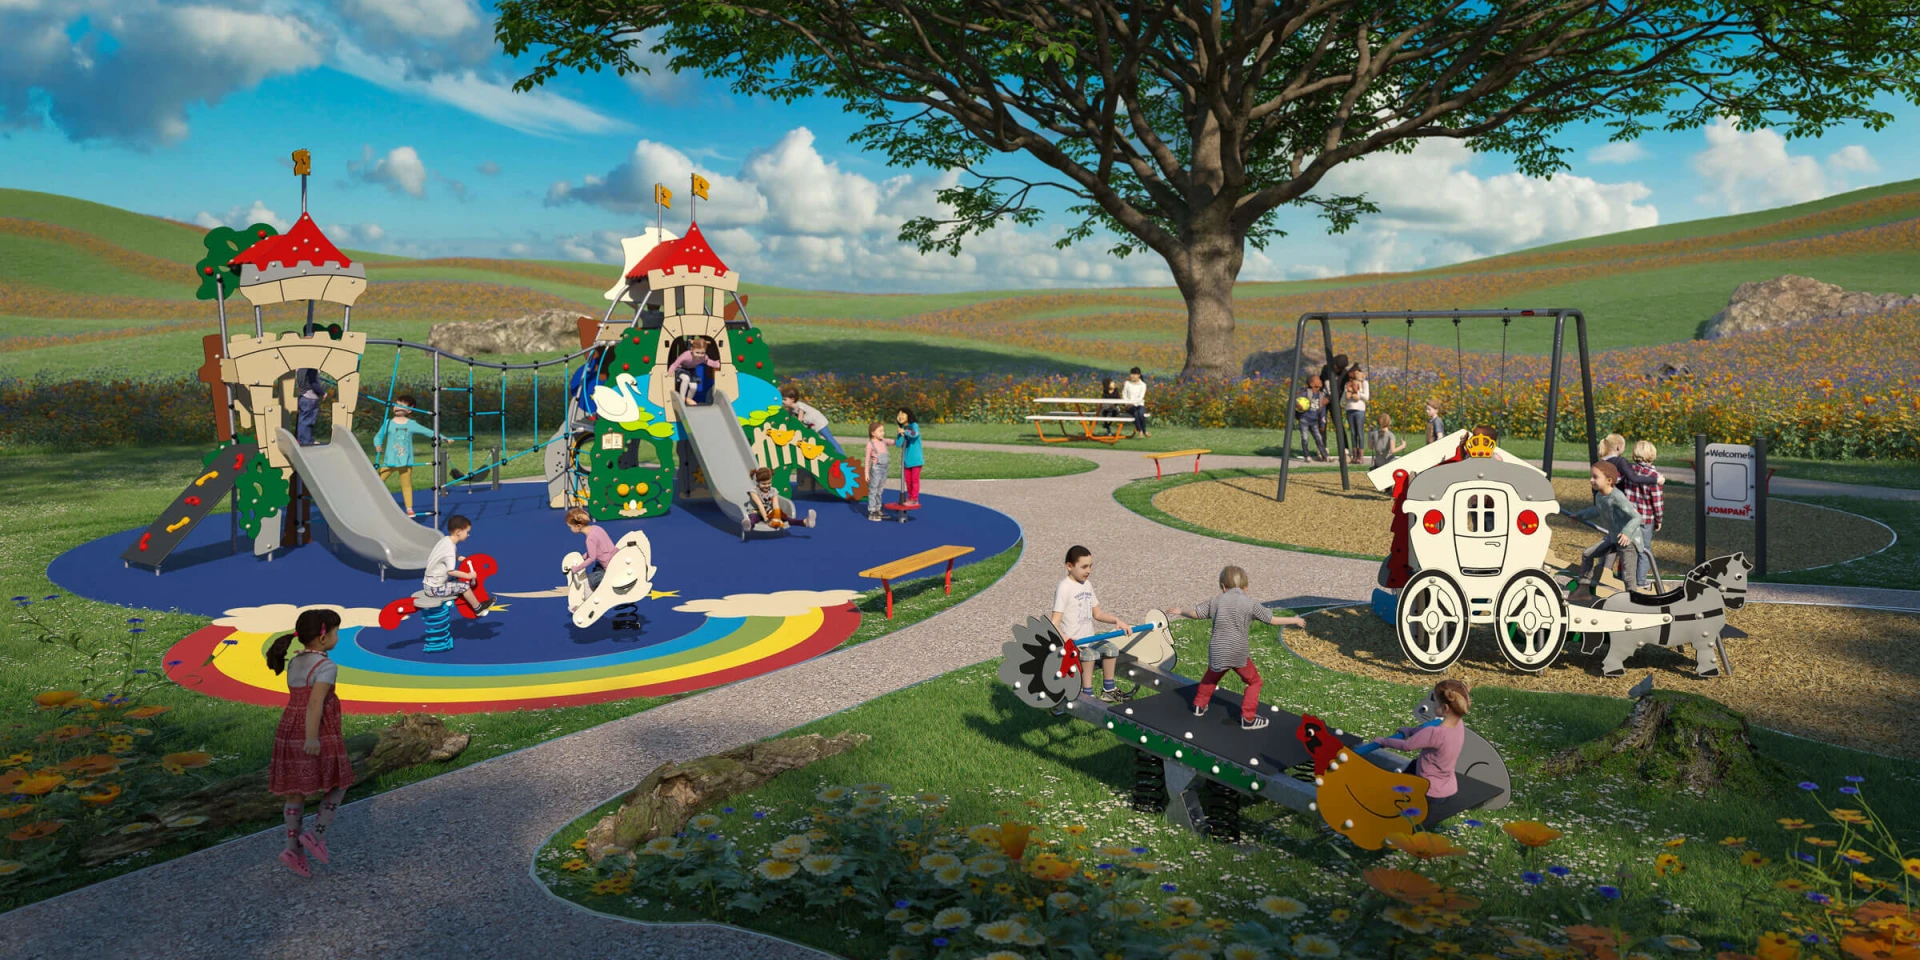 Designvorschlag eines Spielplatzes mit Märchenthema